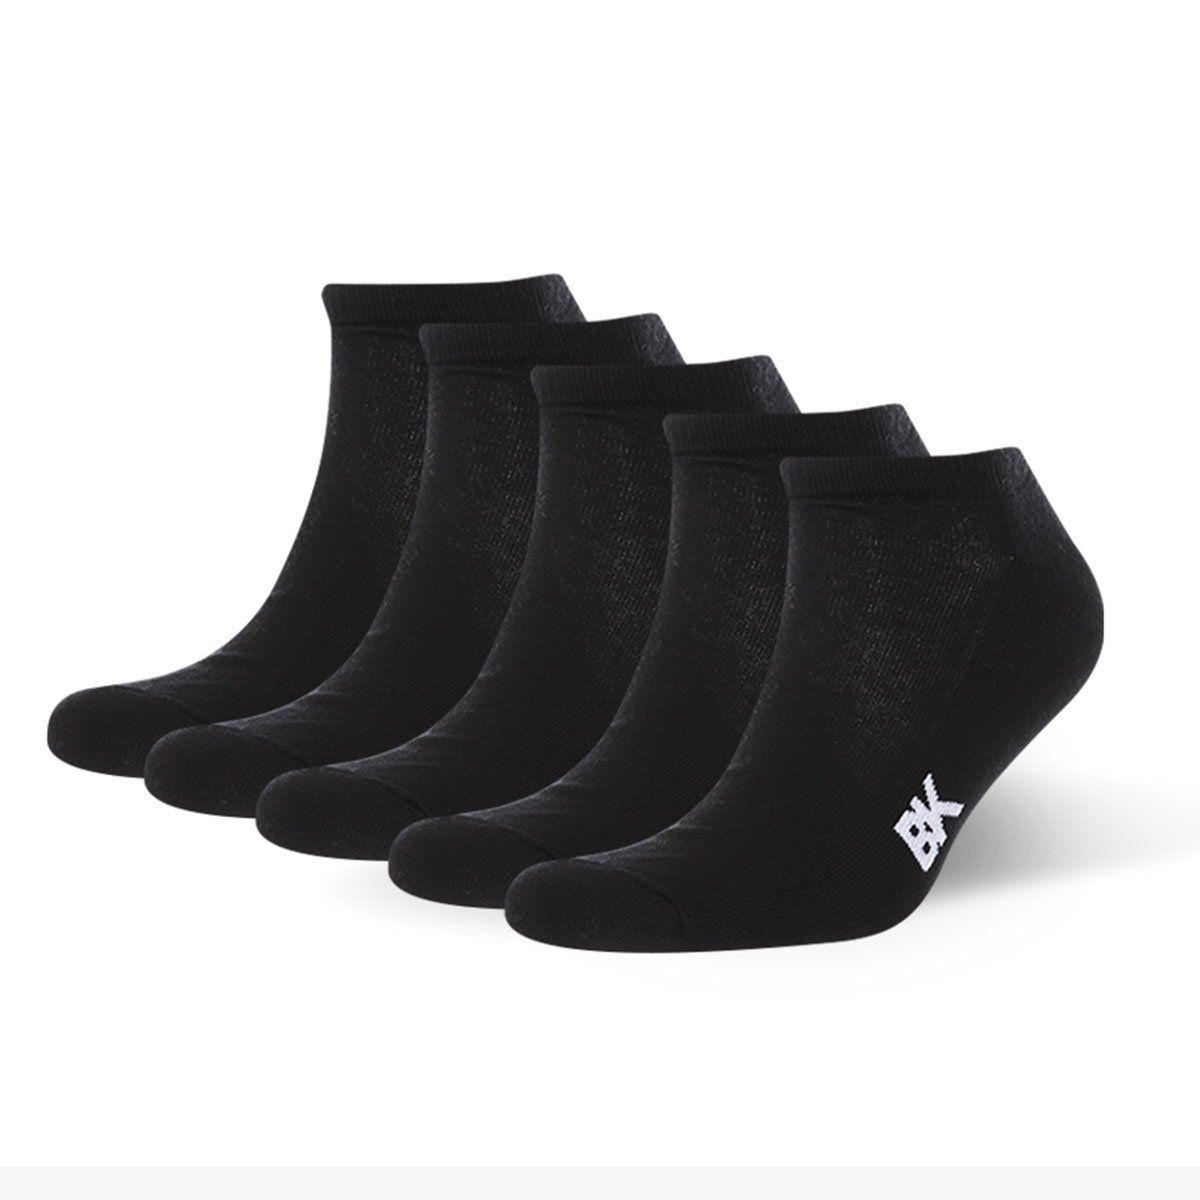 Низкие носки BK sneaker socks men terry sole. В наборе 5 пар.